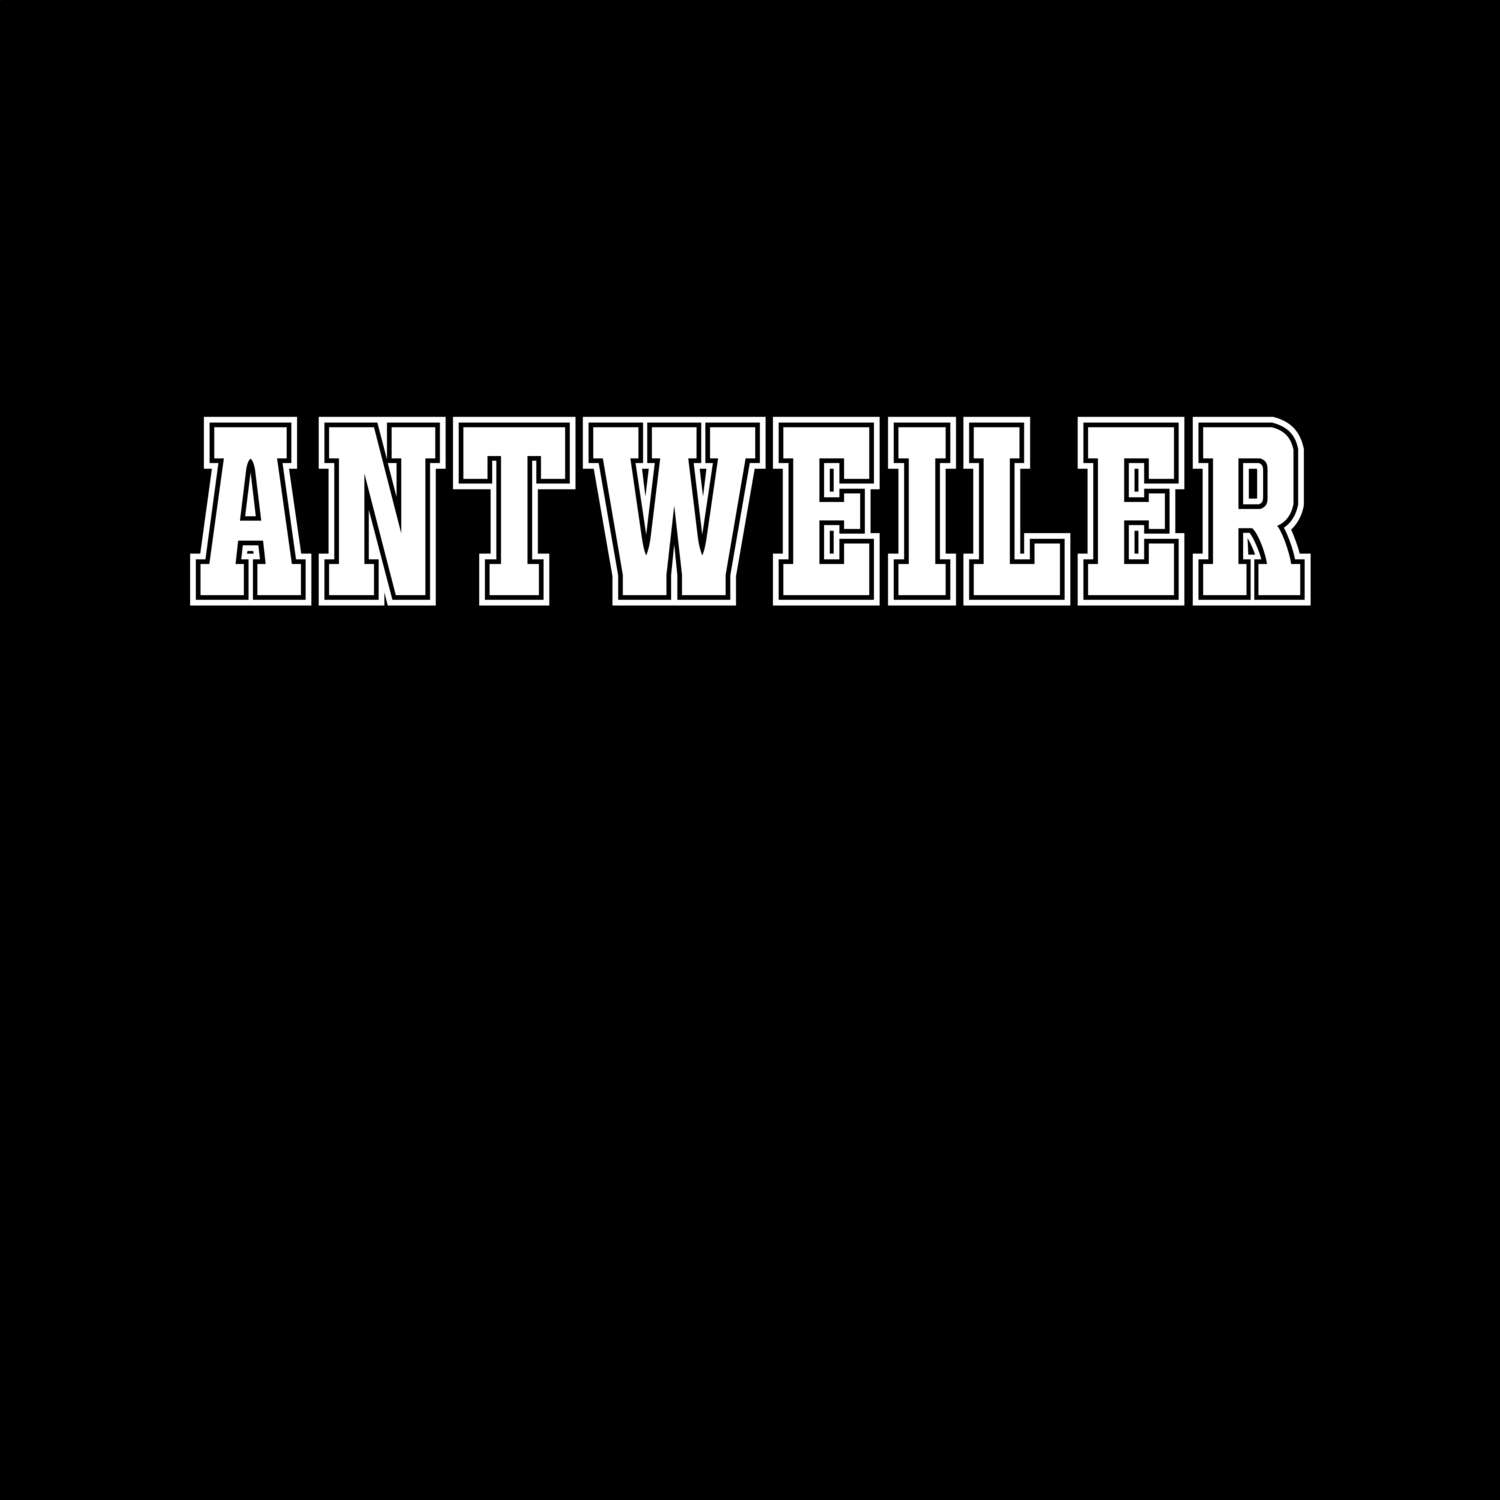 Antweiler T-Shirt »Classic«